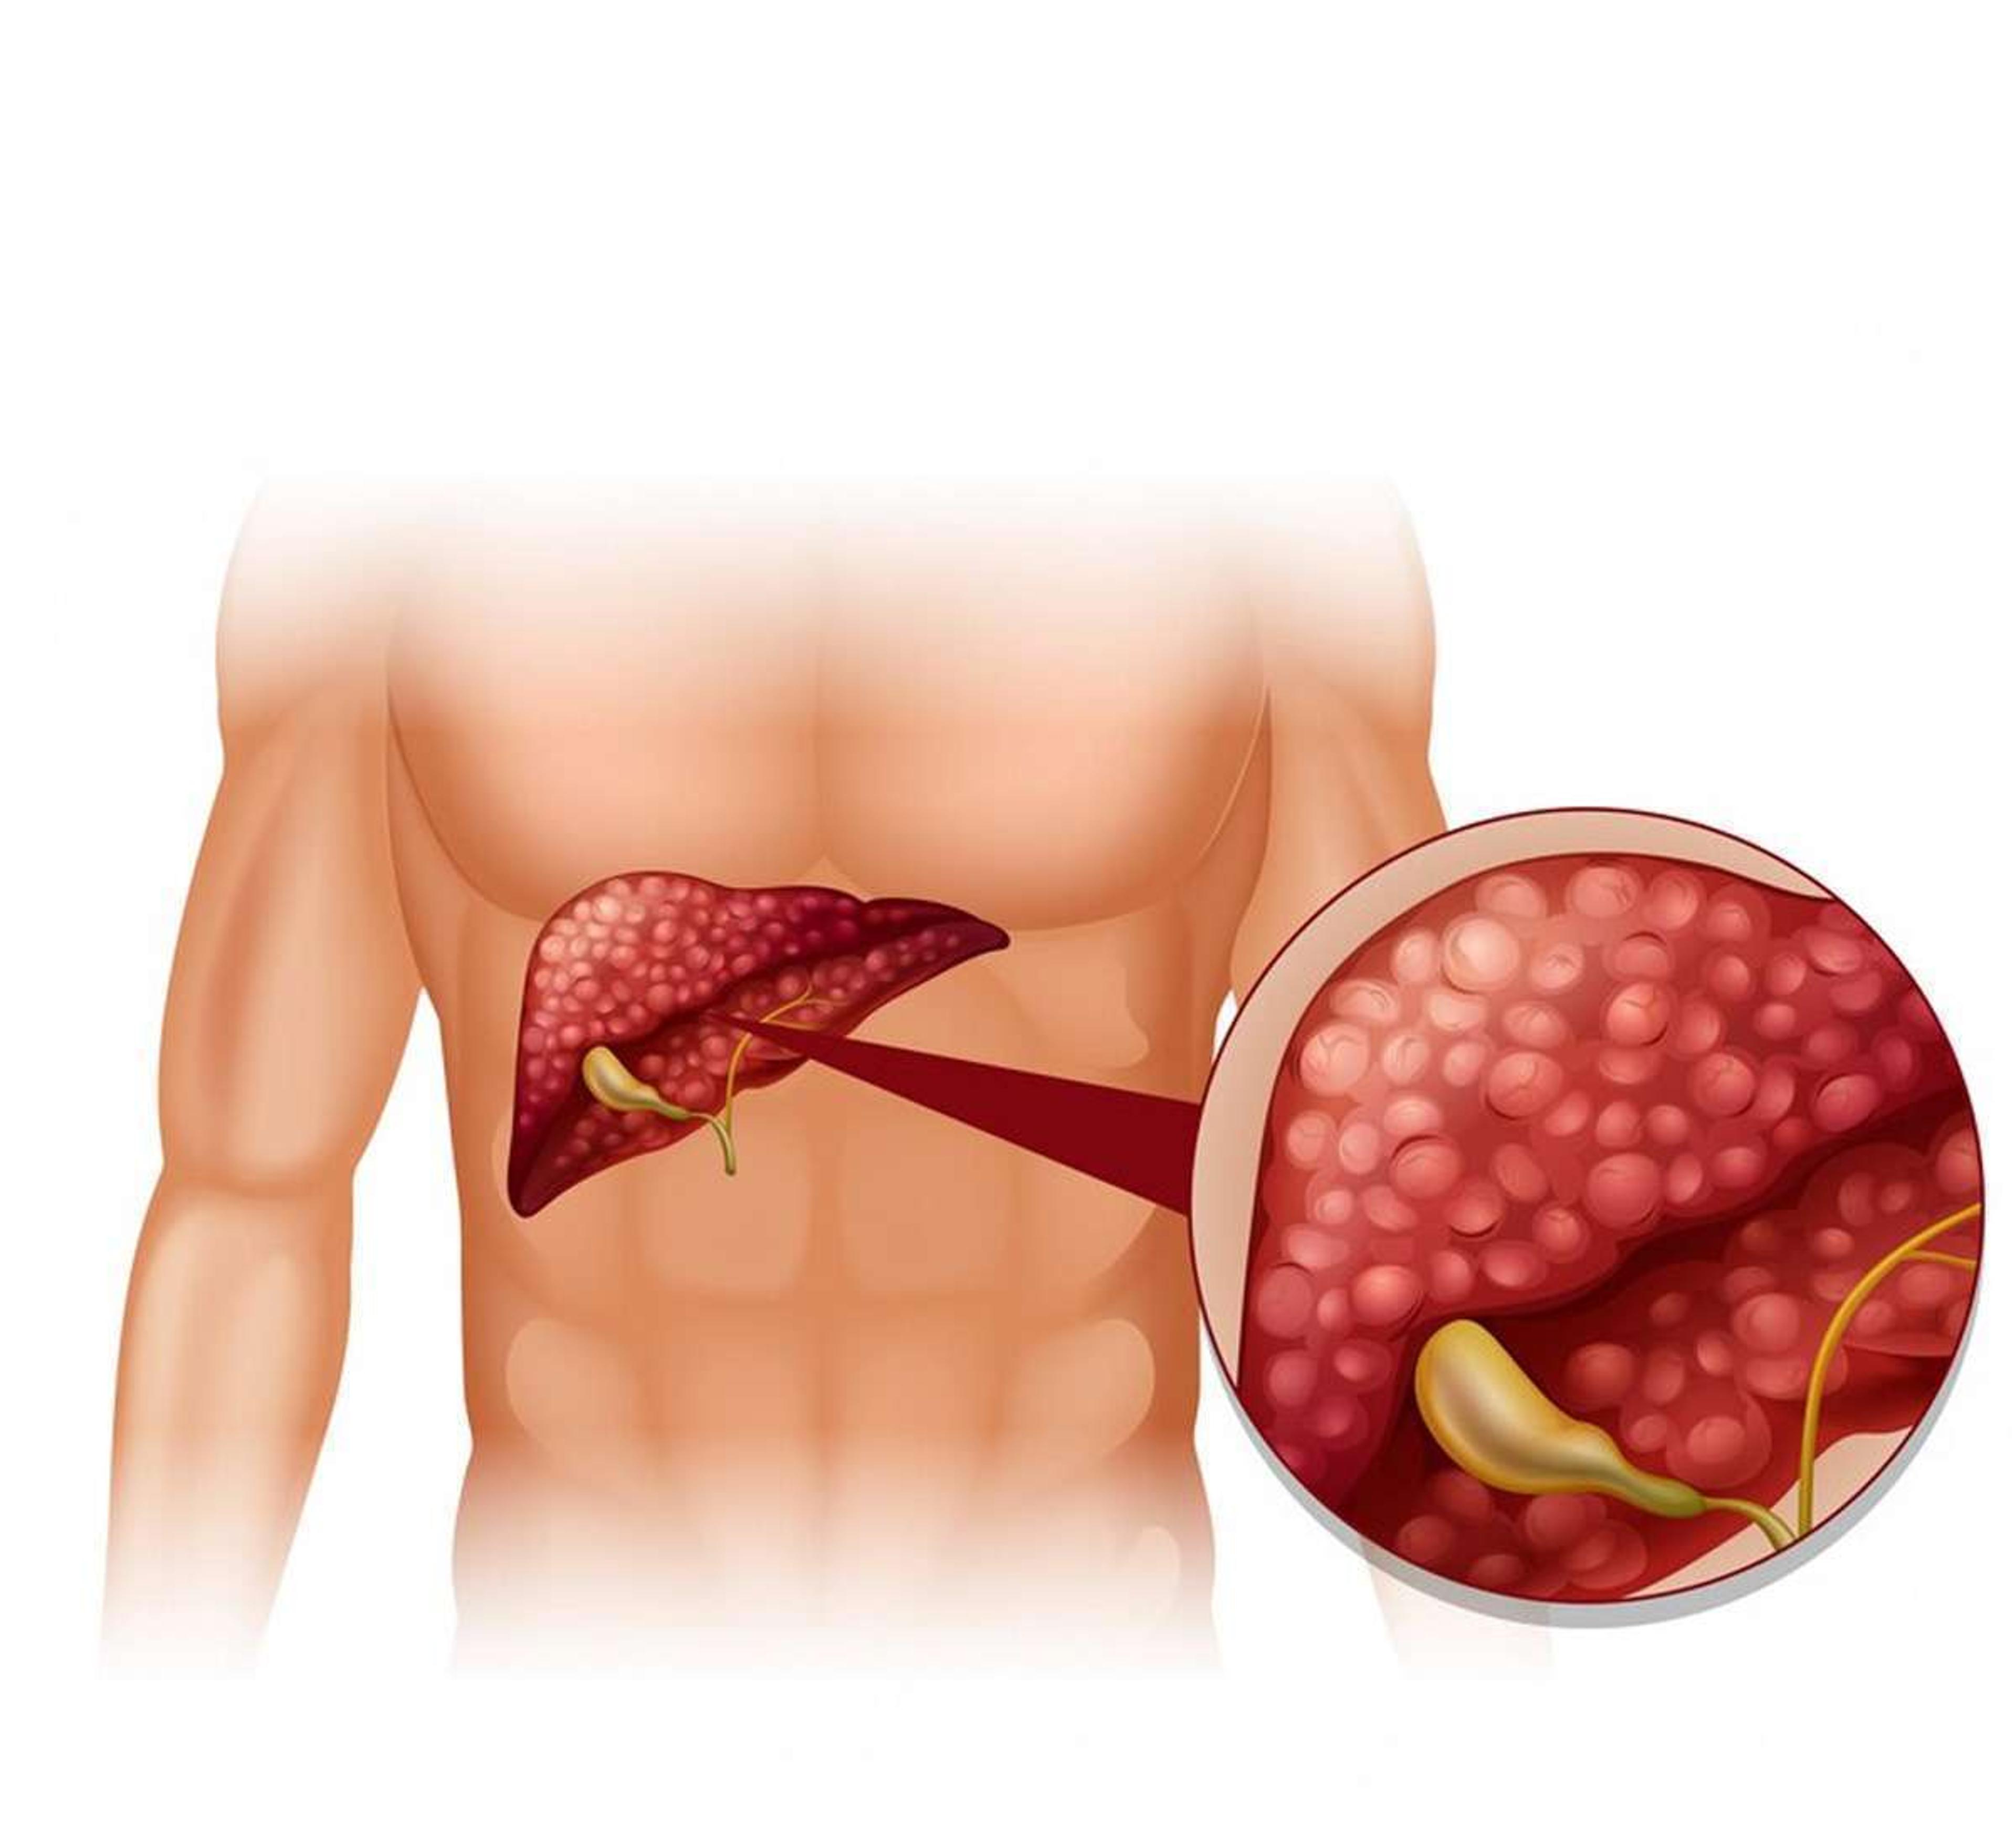 Liver Cancer Symptoms : फ्लू जैसे लक्षण? सावधान हो जाएं, इस जानलेवा बीमारी का हो सकता है खतरा